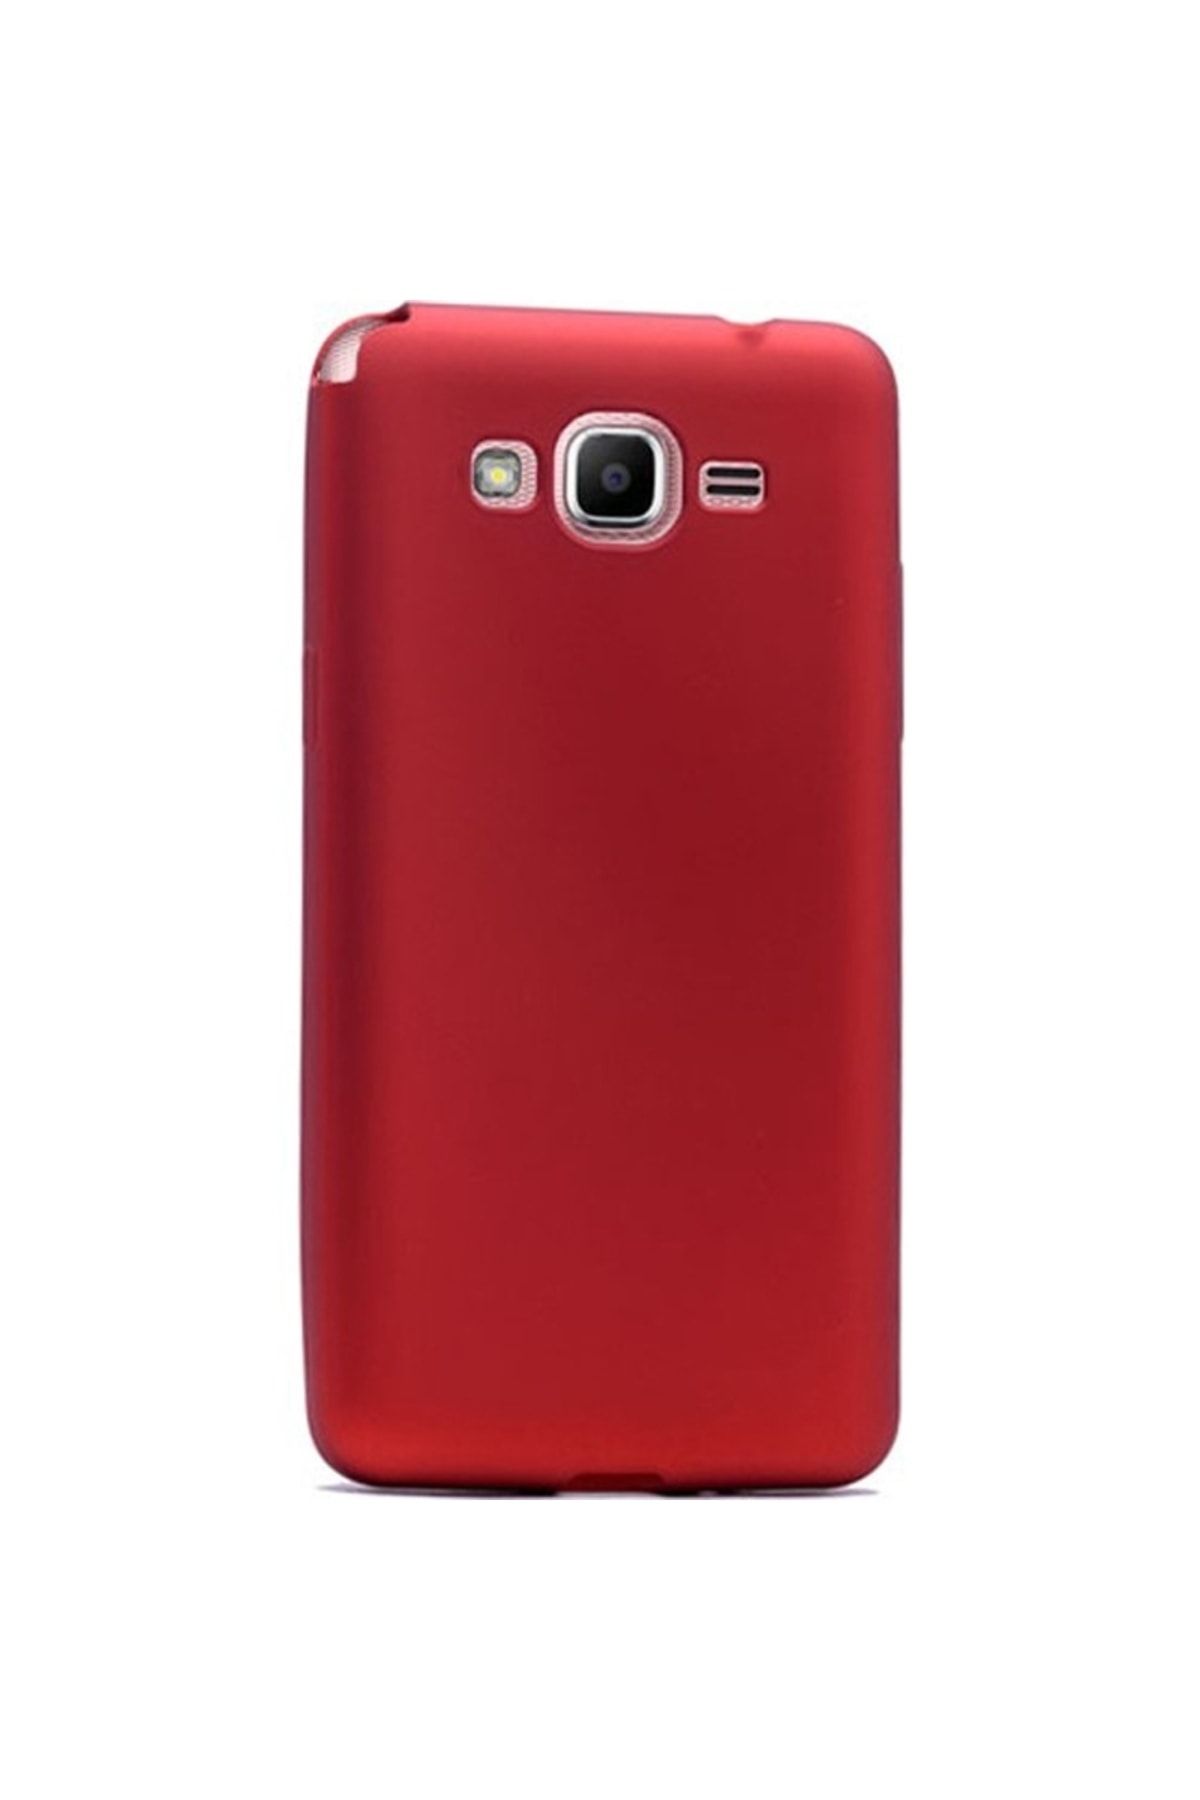 KılıfShop Samsung Galaxy Grand Prime Plus Kılıf Premier Silikon Kılıf Kırmızı